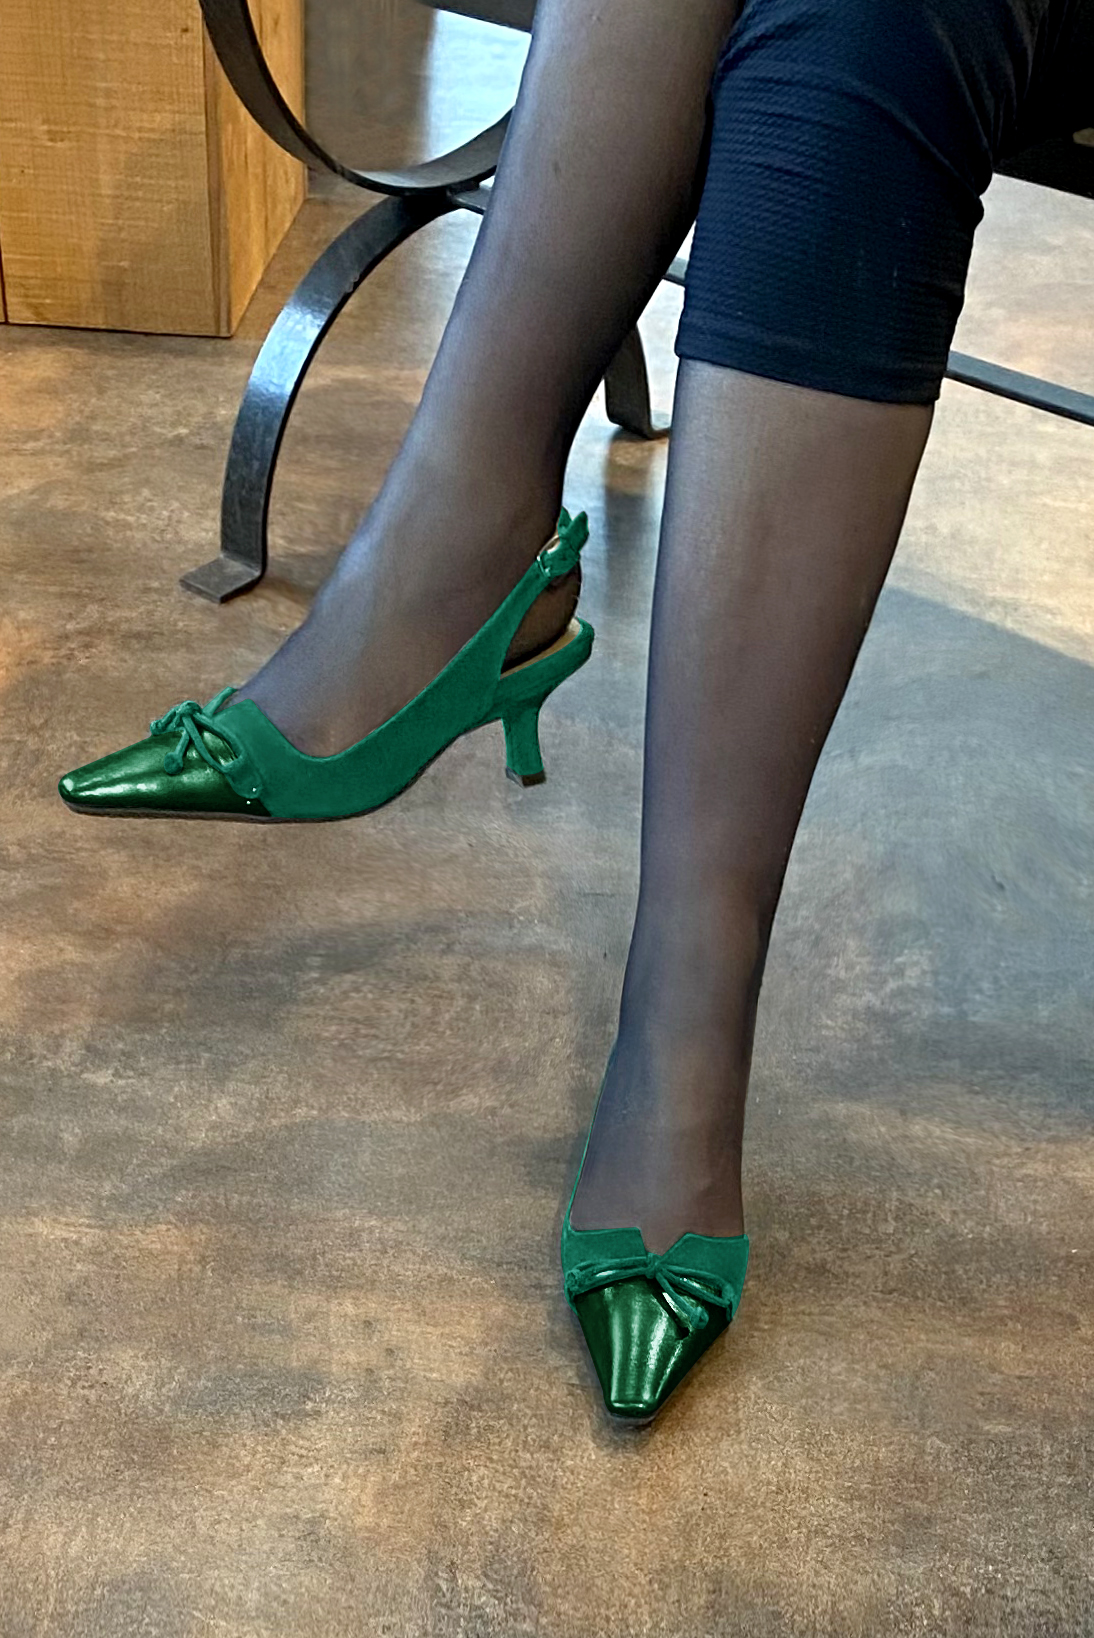 Chaussure femme à brides :  couleur vert émeraude. Bout effilé. Talon mi-haut bobine. Vue porté - Florence KOOIJMAN